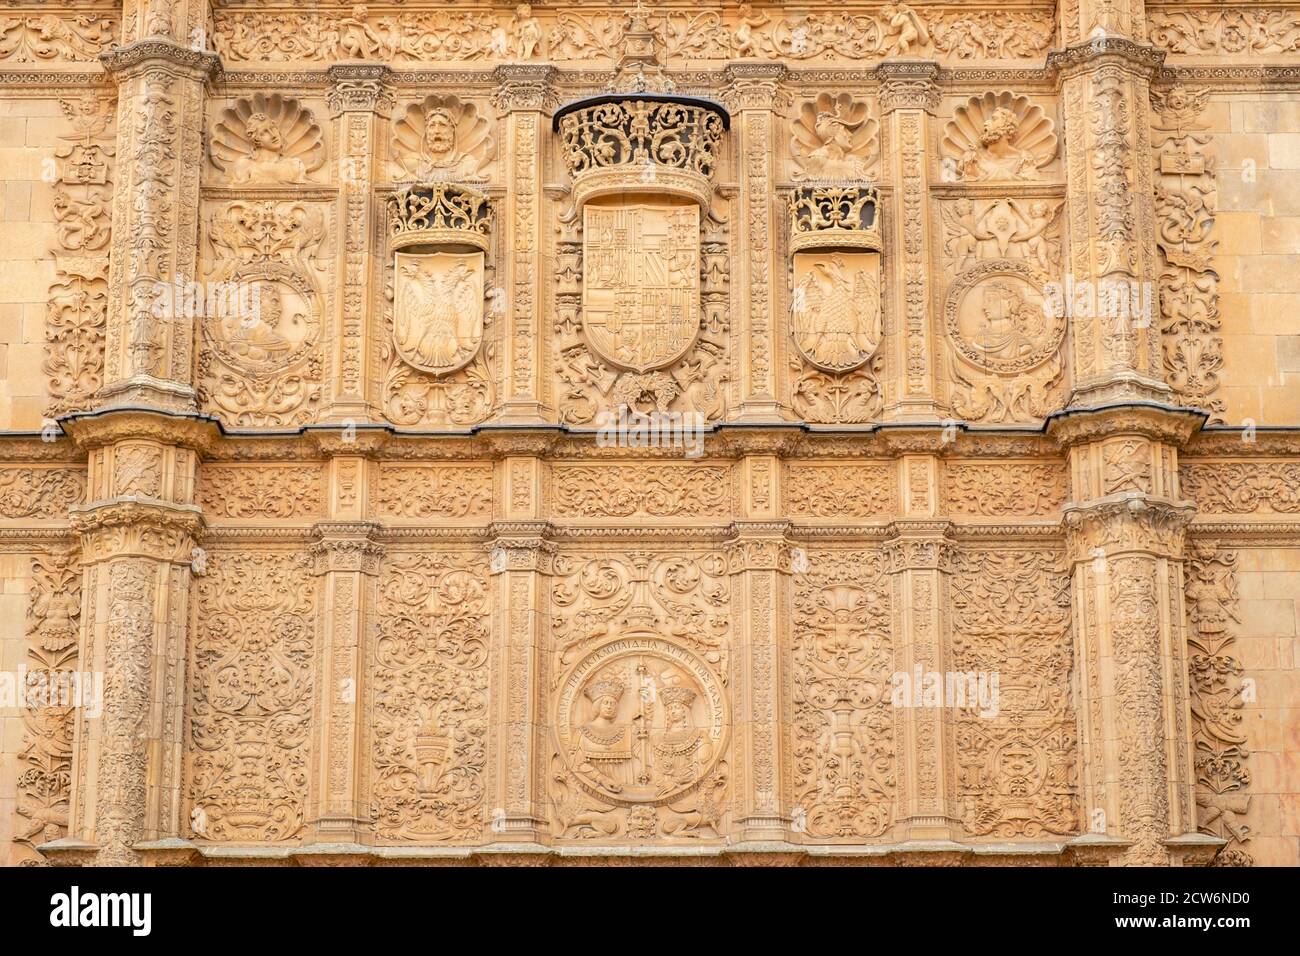 Fachada de la Universidad de Salamanca, 1529, estilo plateresco, Salamanca, comunidad Autónoma de Castilla y León, España Foto de stock